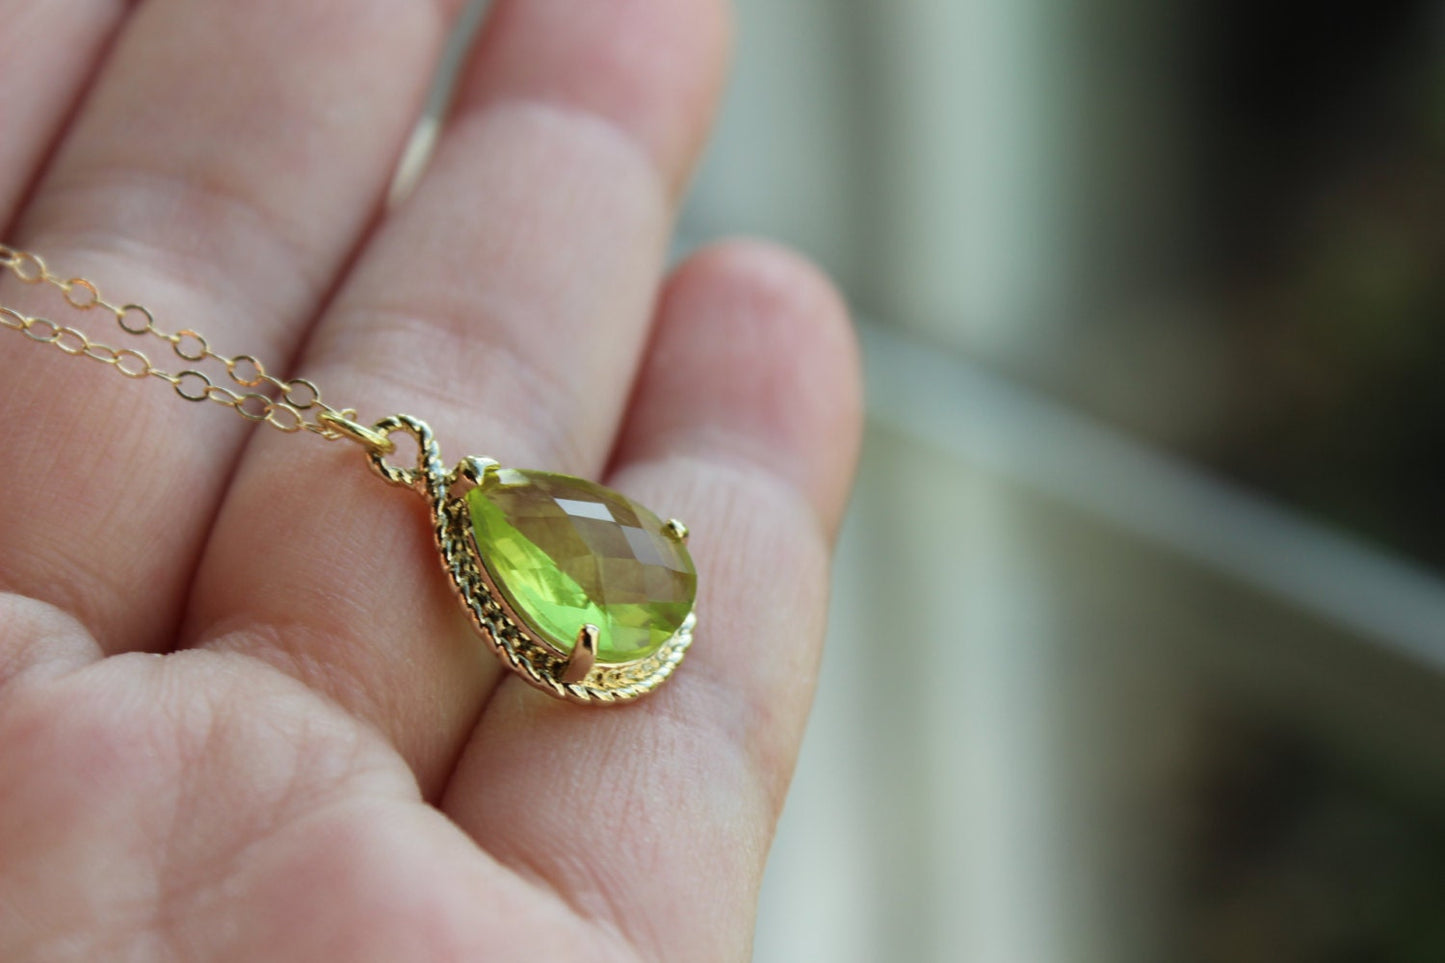 Gold Peridot Necklace Apple Green Teardrop Jewelry - Bridesmaid Necklace - Peridot Bridesmaid Jewelry Peridot Apple Green Wedding Jewelry